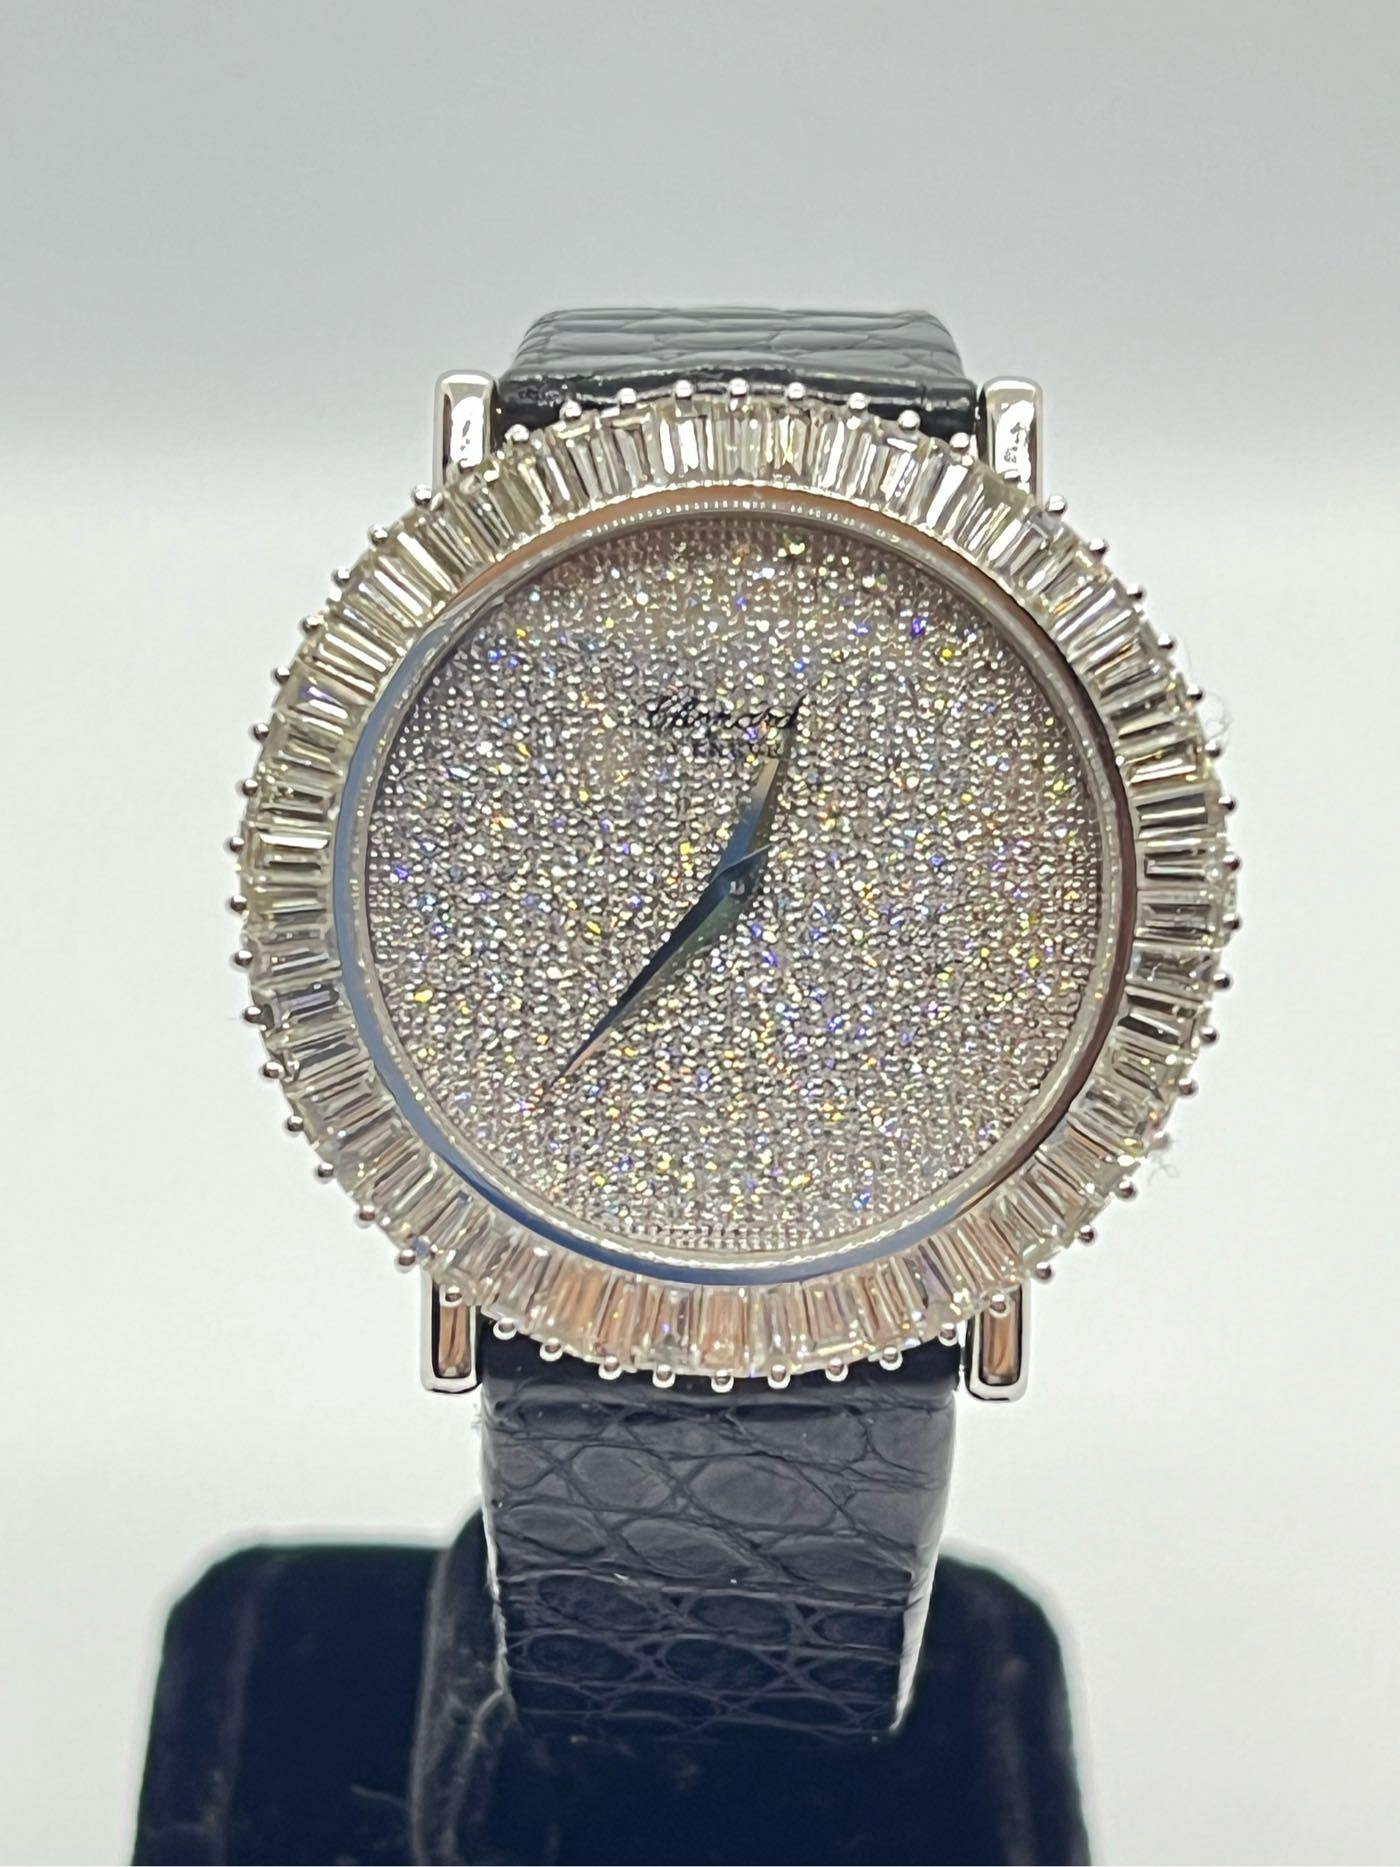 【益成當鋪】流當品 Chopard 白18K蕭邦鑽錶 手上鏈機械肖邦錶 豪華鑲嵌滿天星鑽石面 鑽圈 附盒子保證書 錶徑37mm